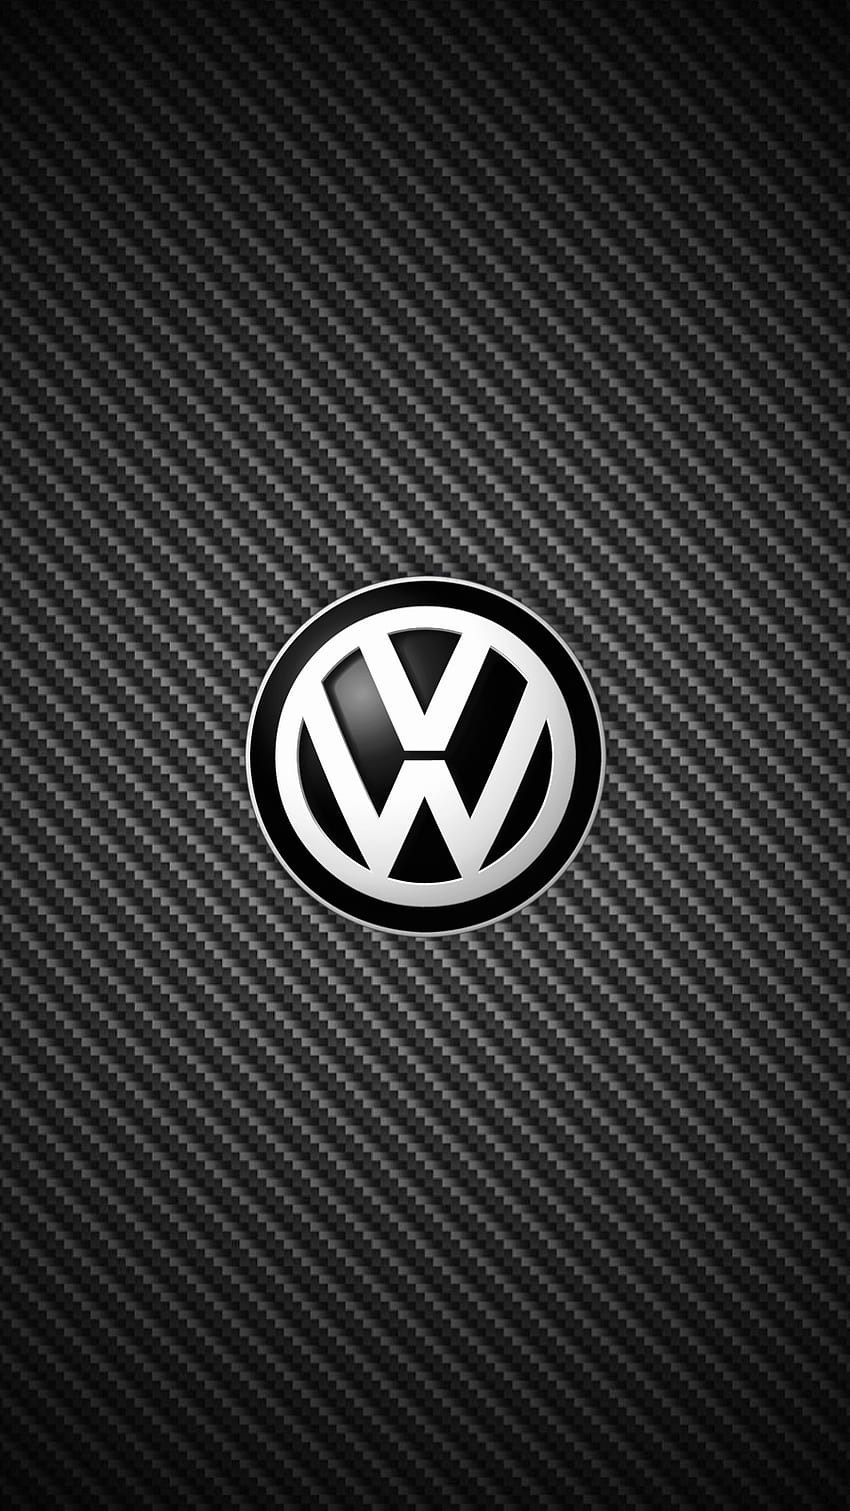 VW iPhone, Volkswagen iPhone HD phone wallpaper | Pxfuel